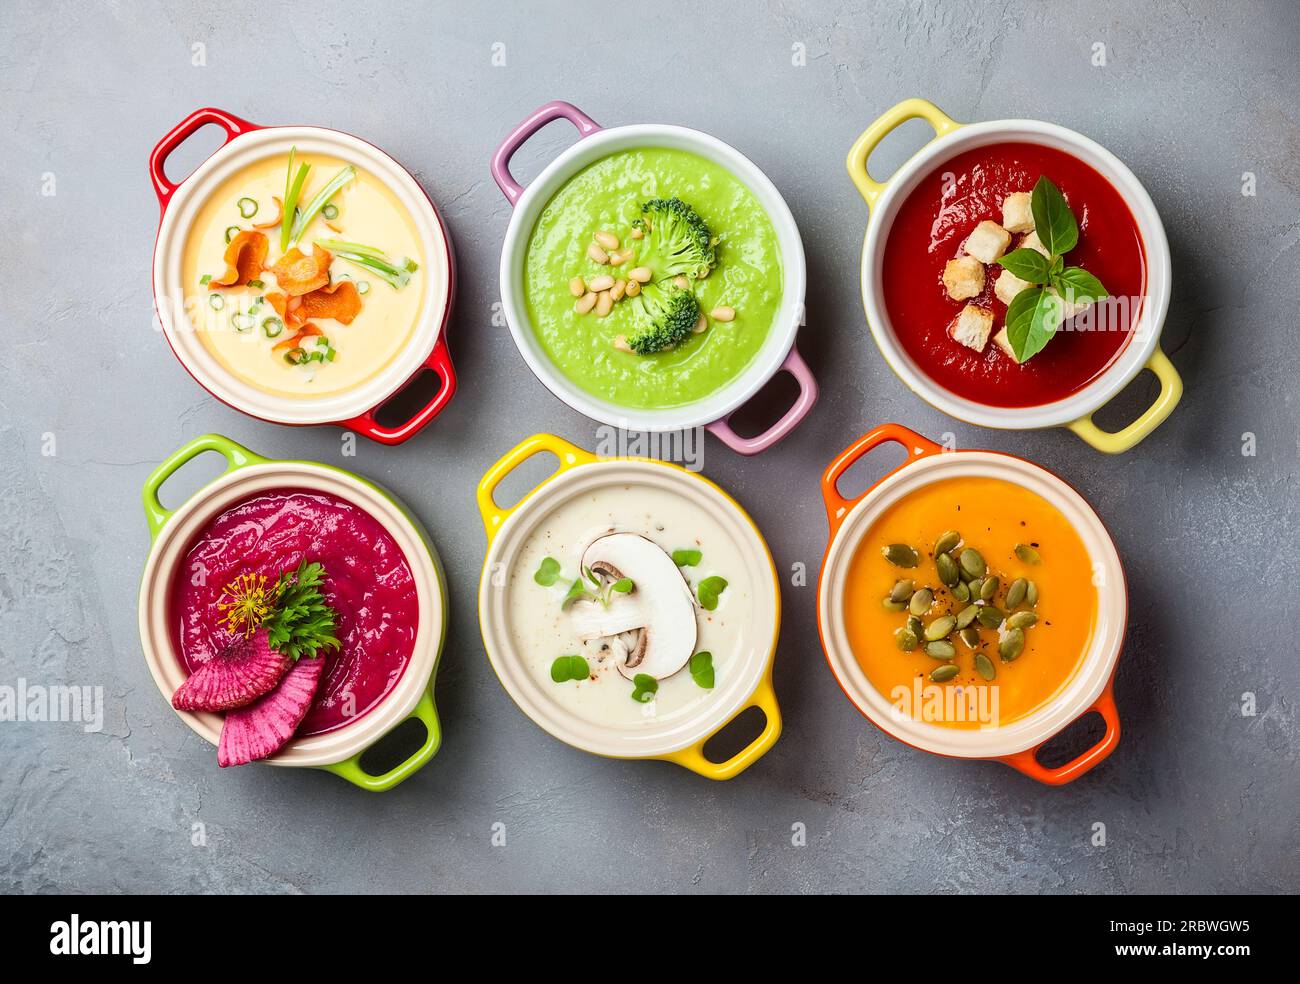 Variété de soupes à la crème de légumes colorés dans de petits pots. Vue de dessus. Concept d'alimentation saine ou de nourriture végétarienne. Banque D'Images